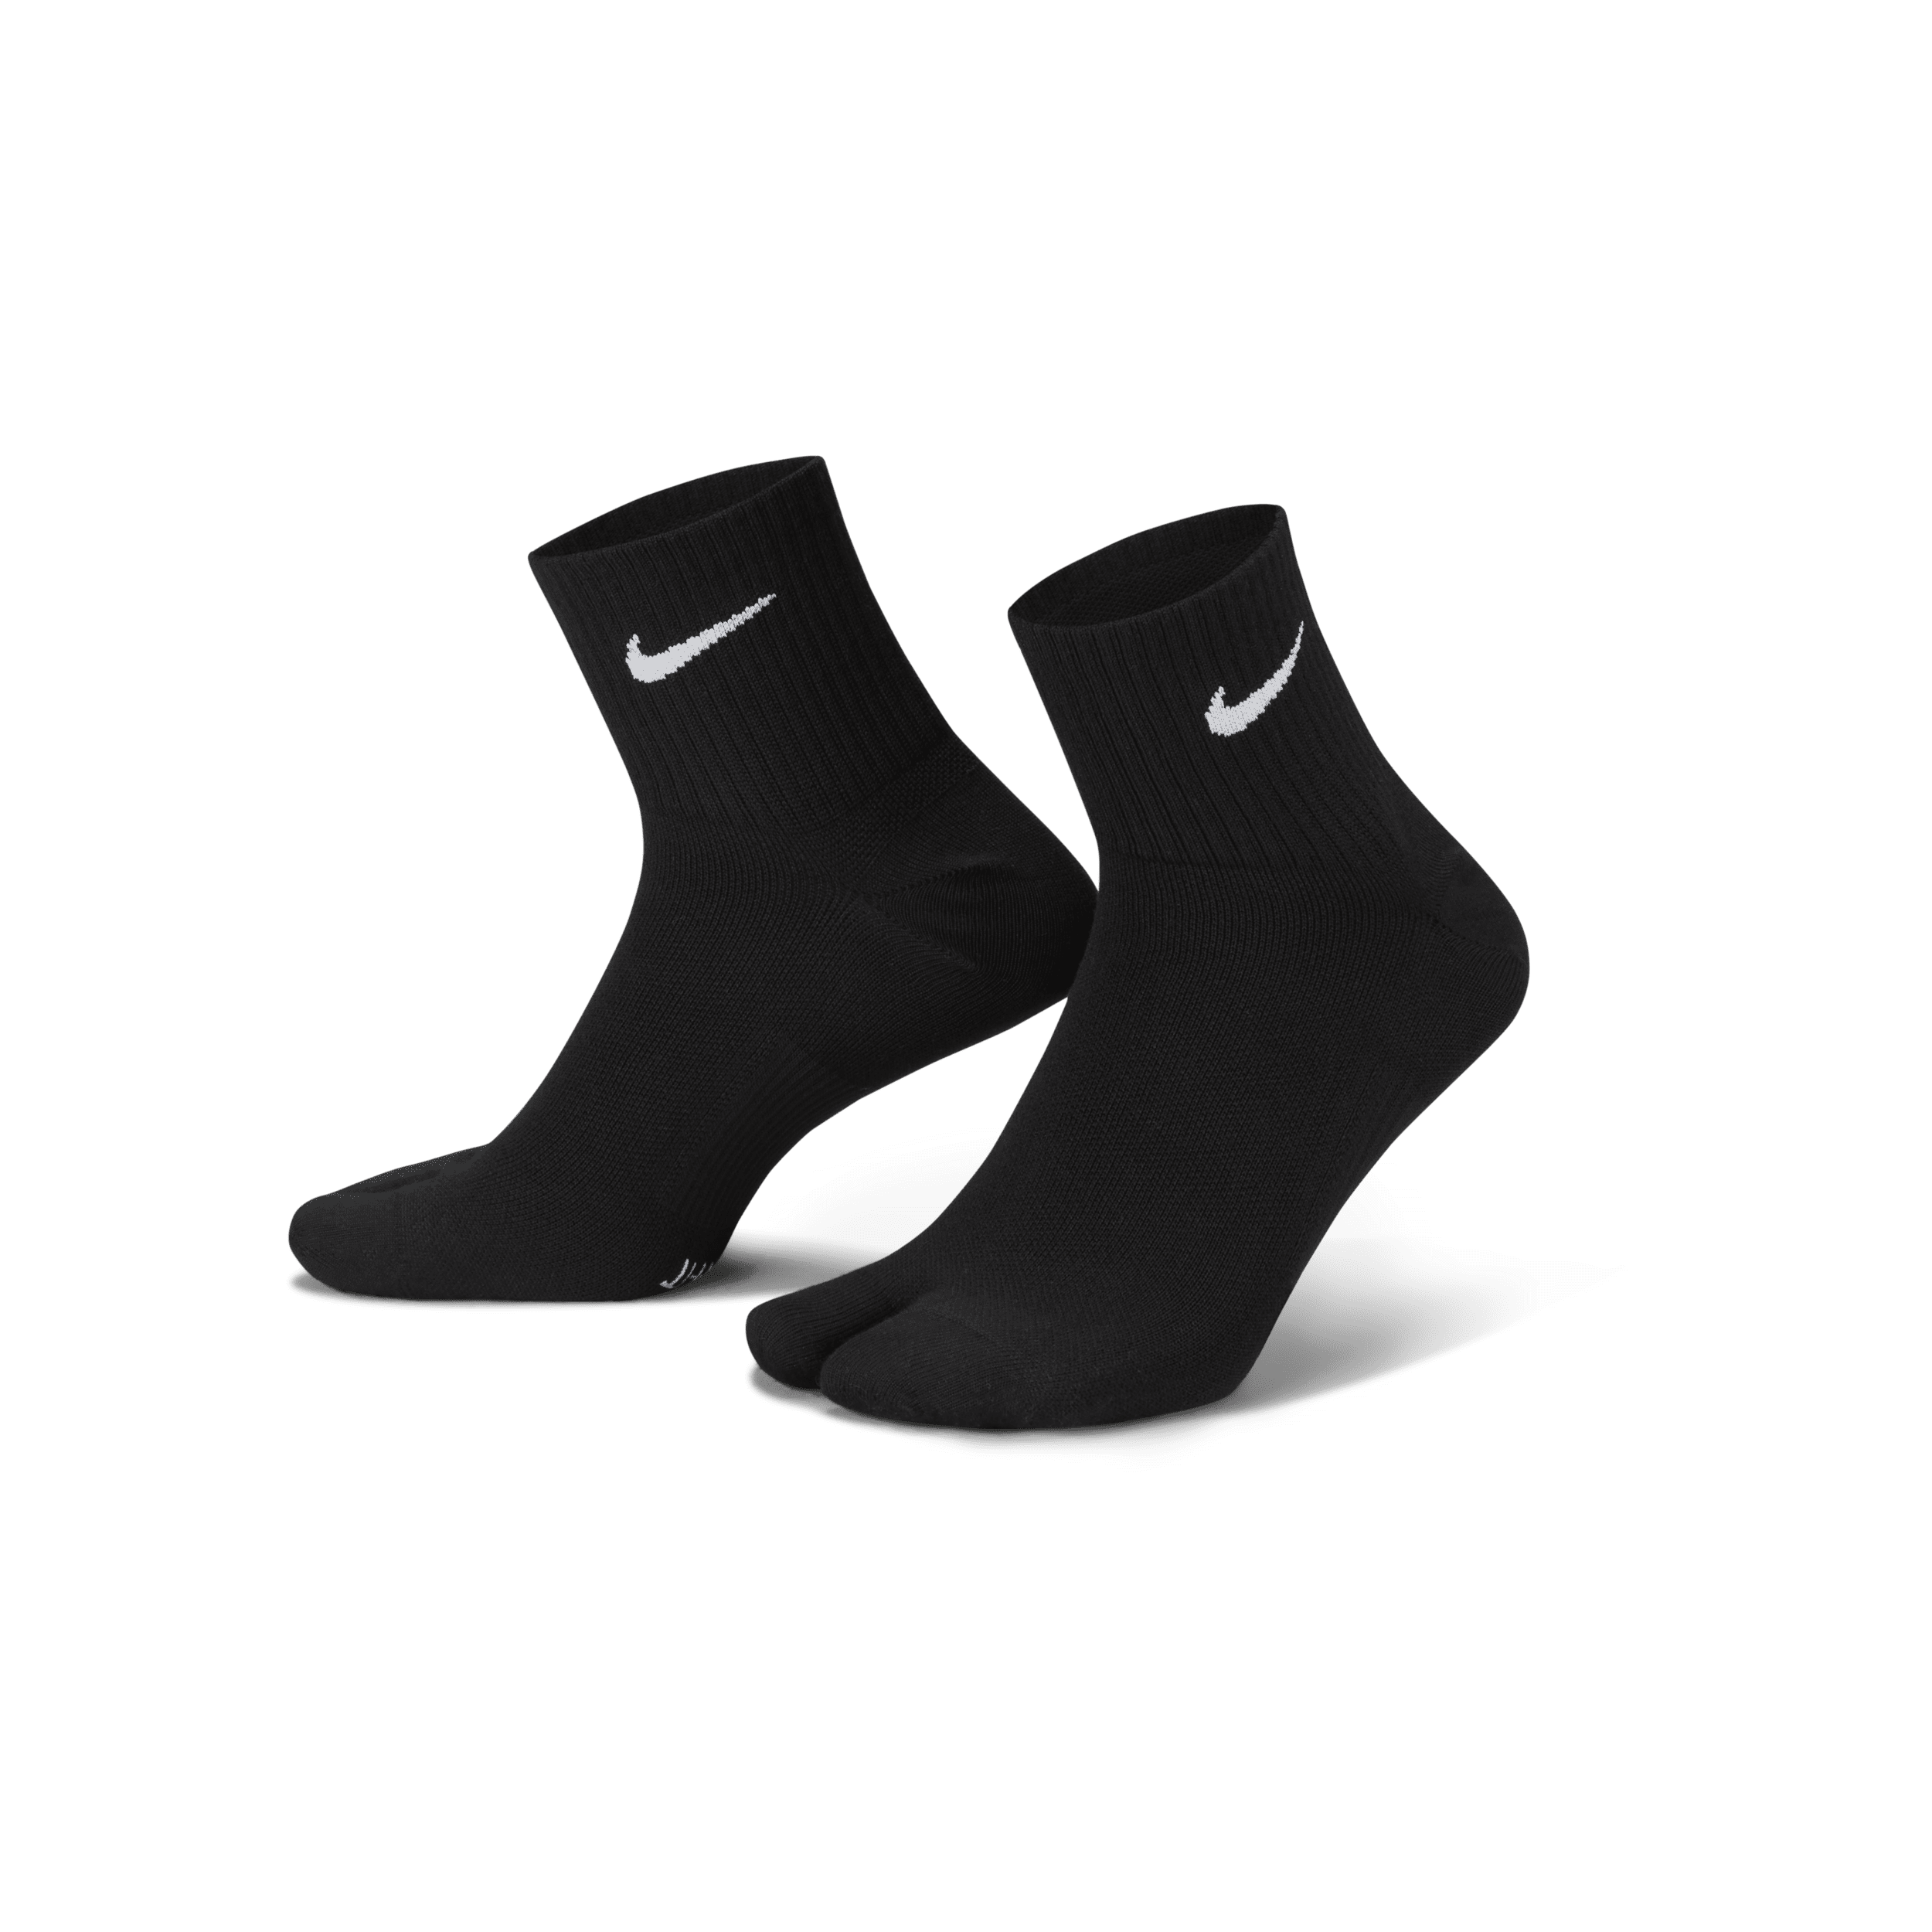 Nike Everyday Plus Calcetines tobilleros ligeros con separación para los dedos - Negro